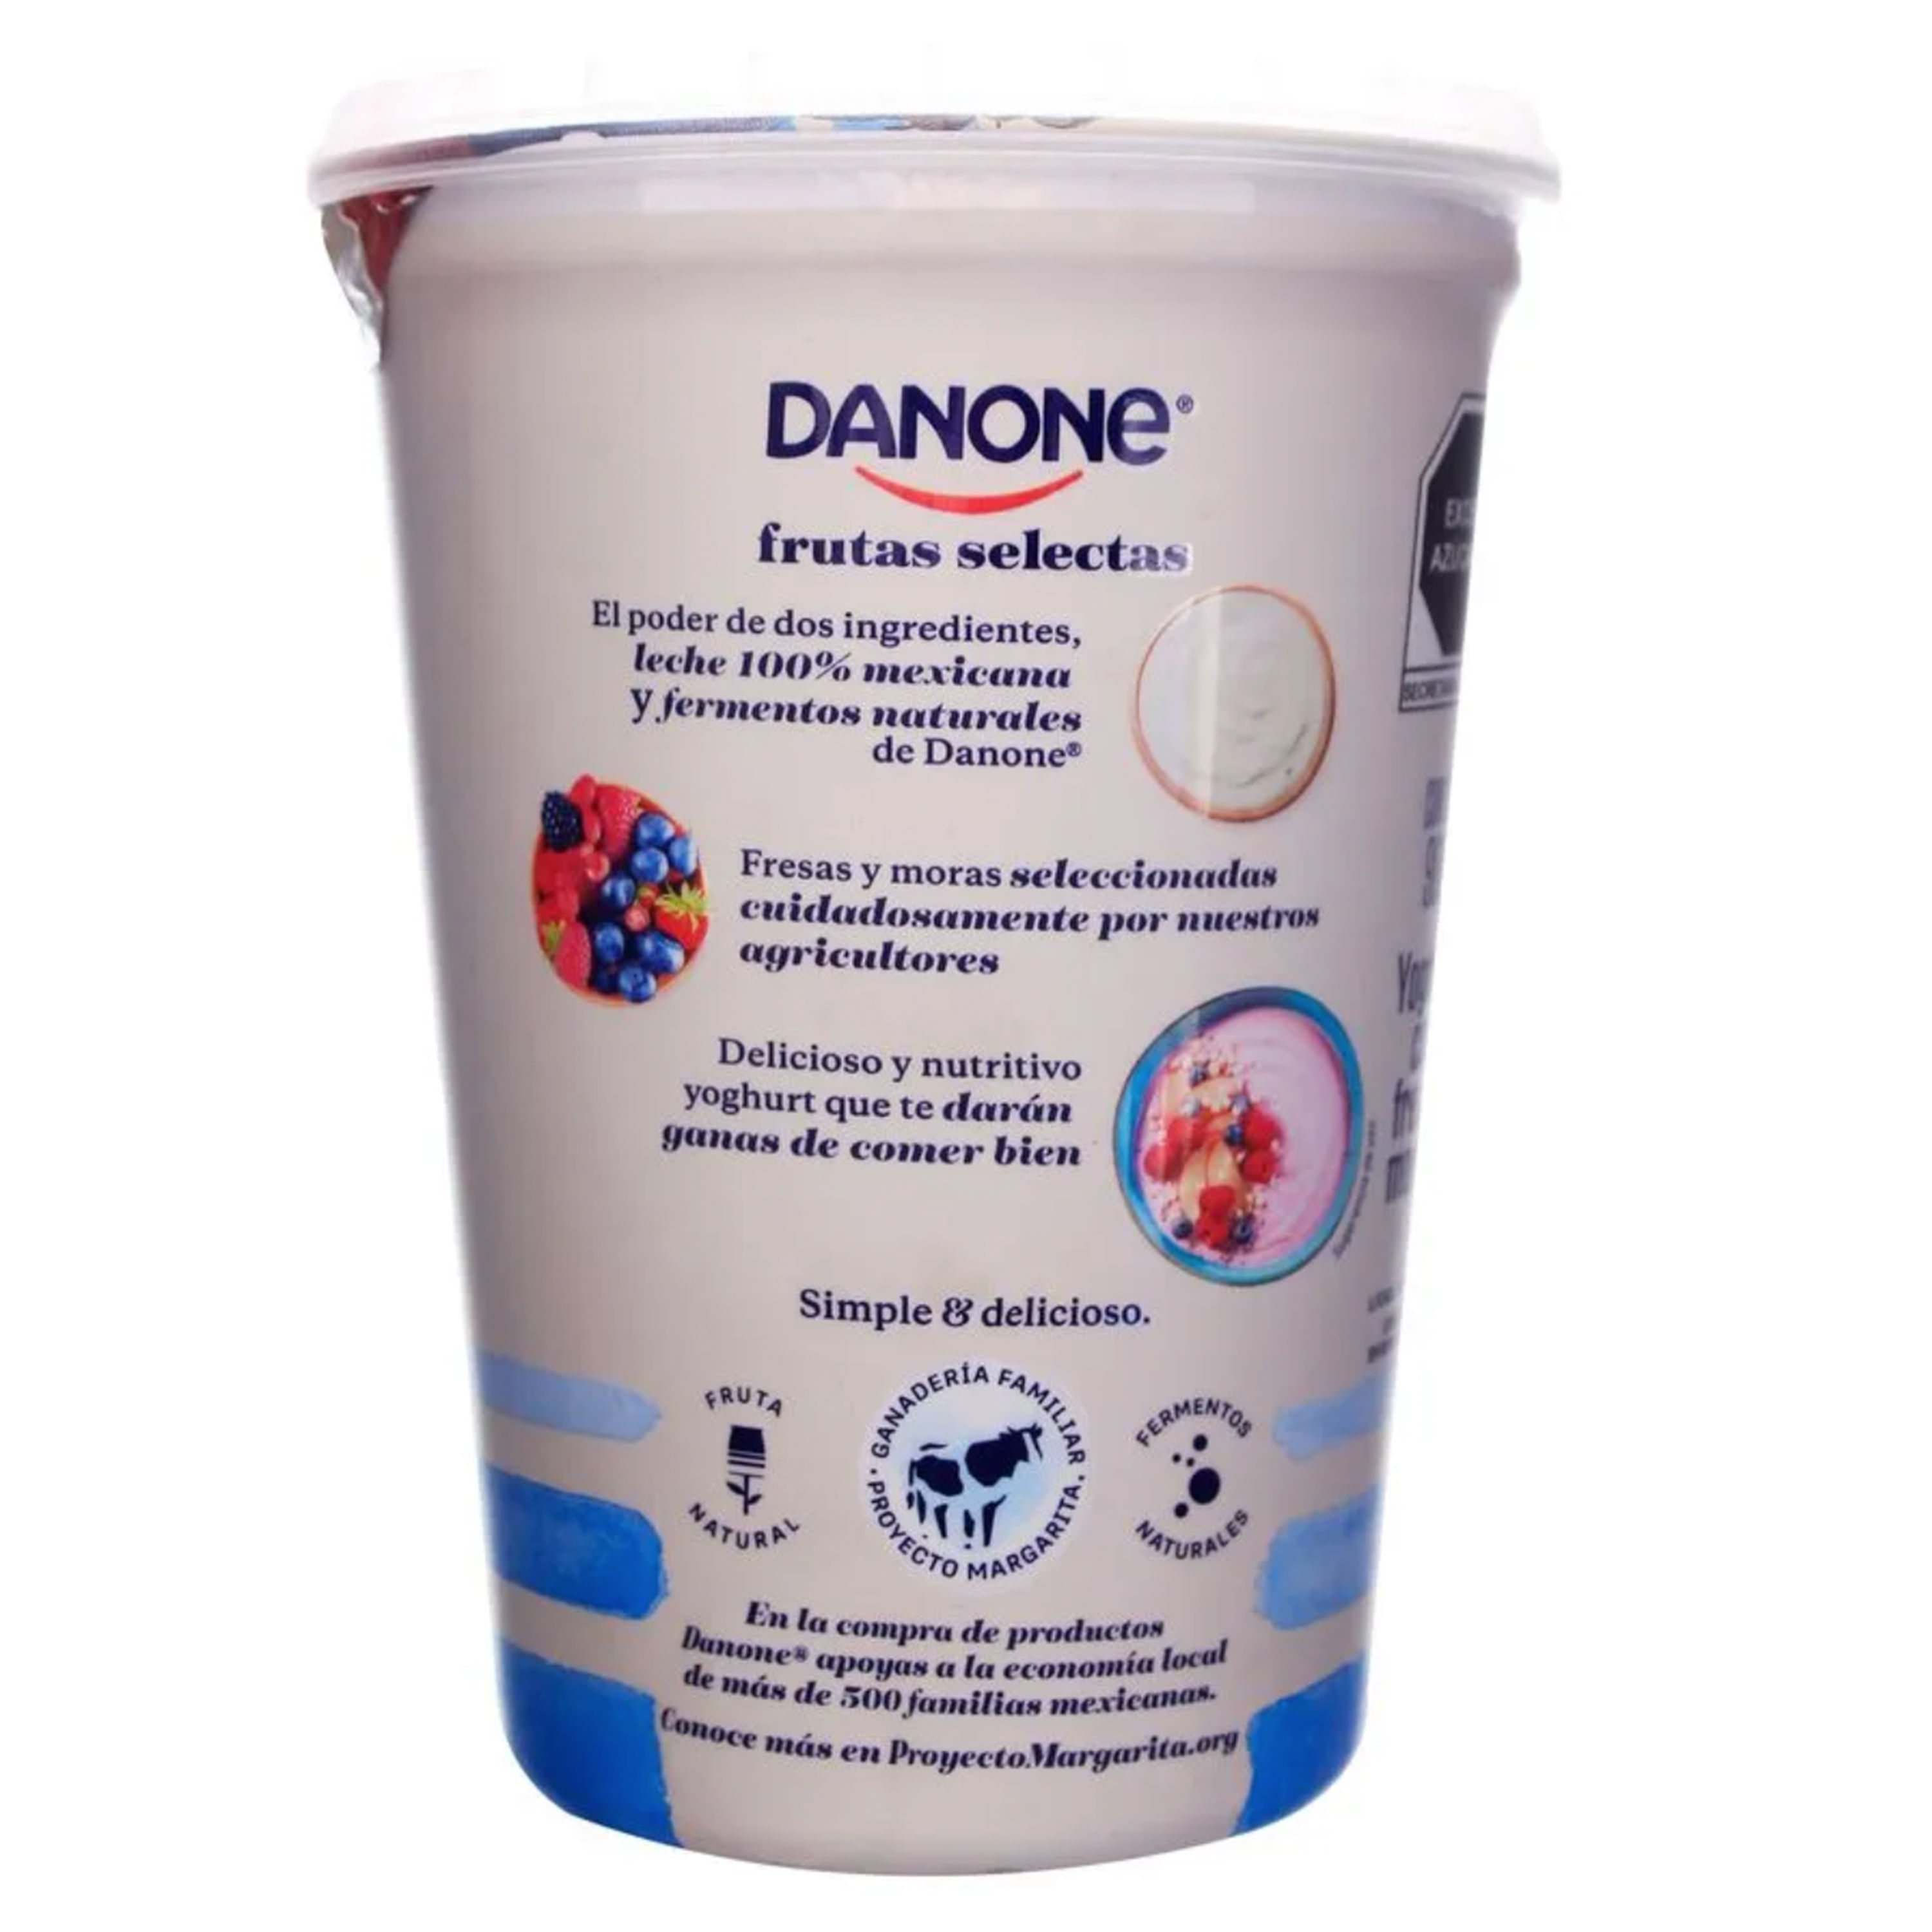 Yoghurt Danone Sabor Fresa 900g